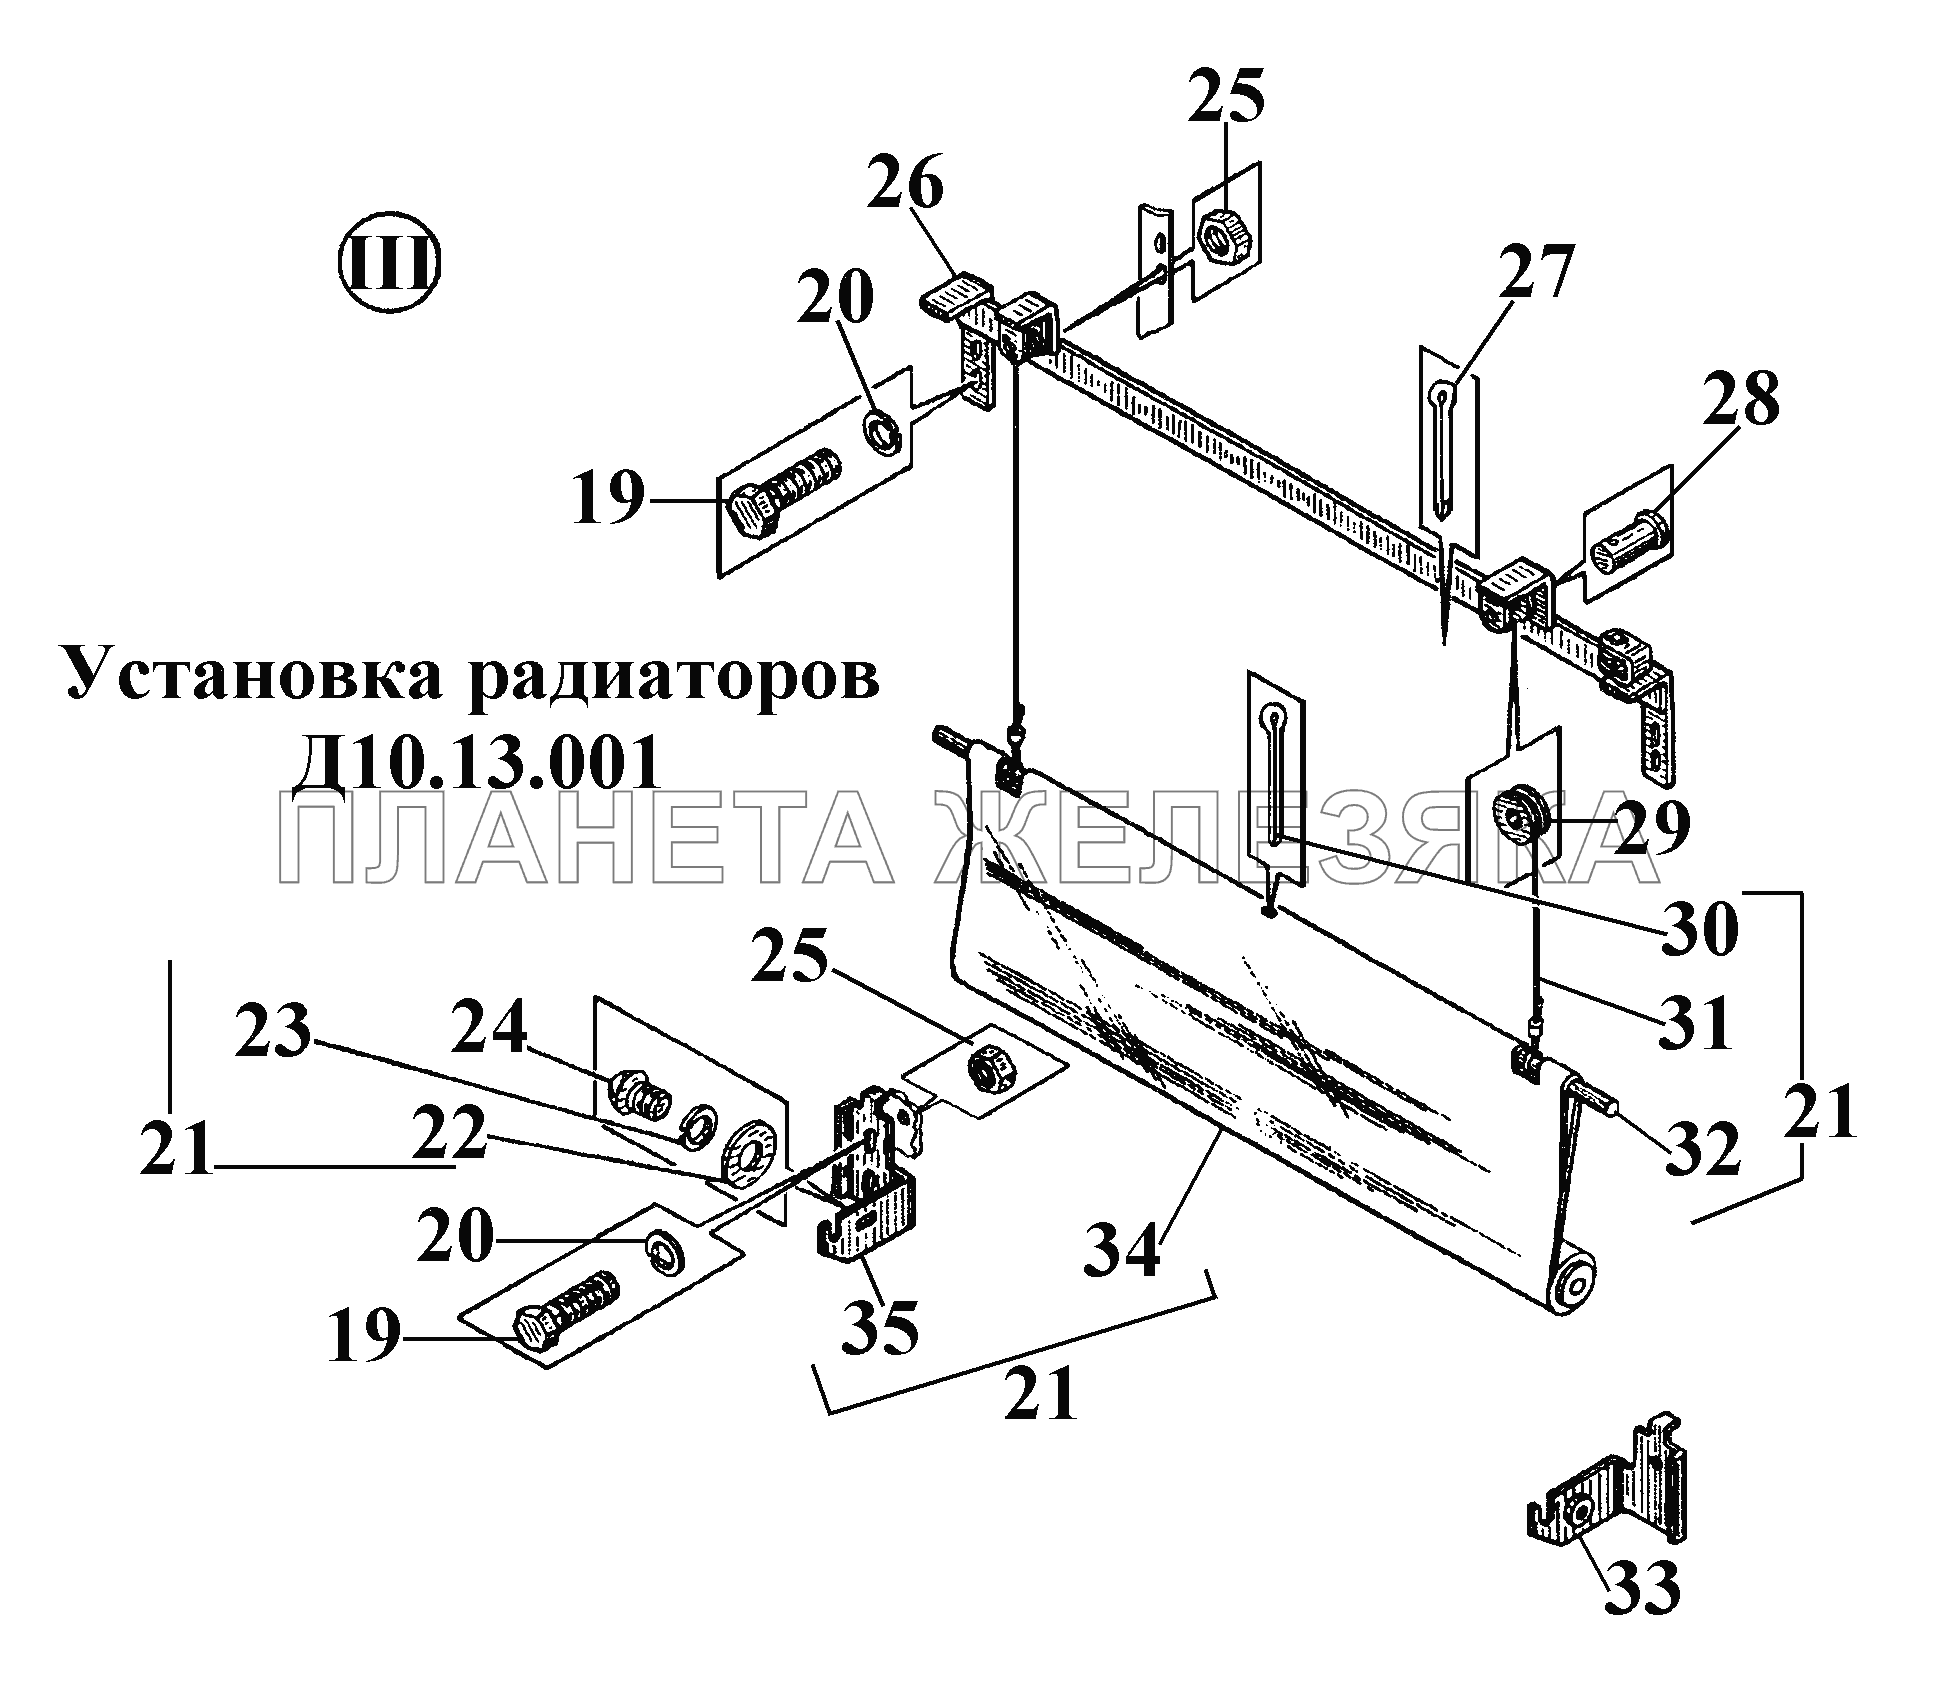 Установка радиаторов Д10.13.001 (4) ВТ-100Д